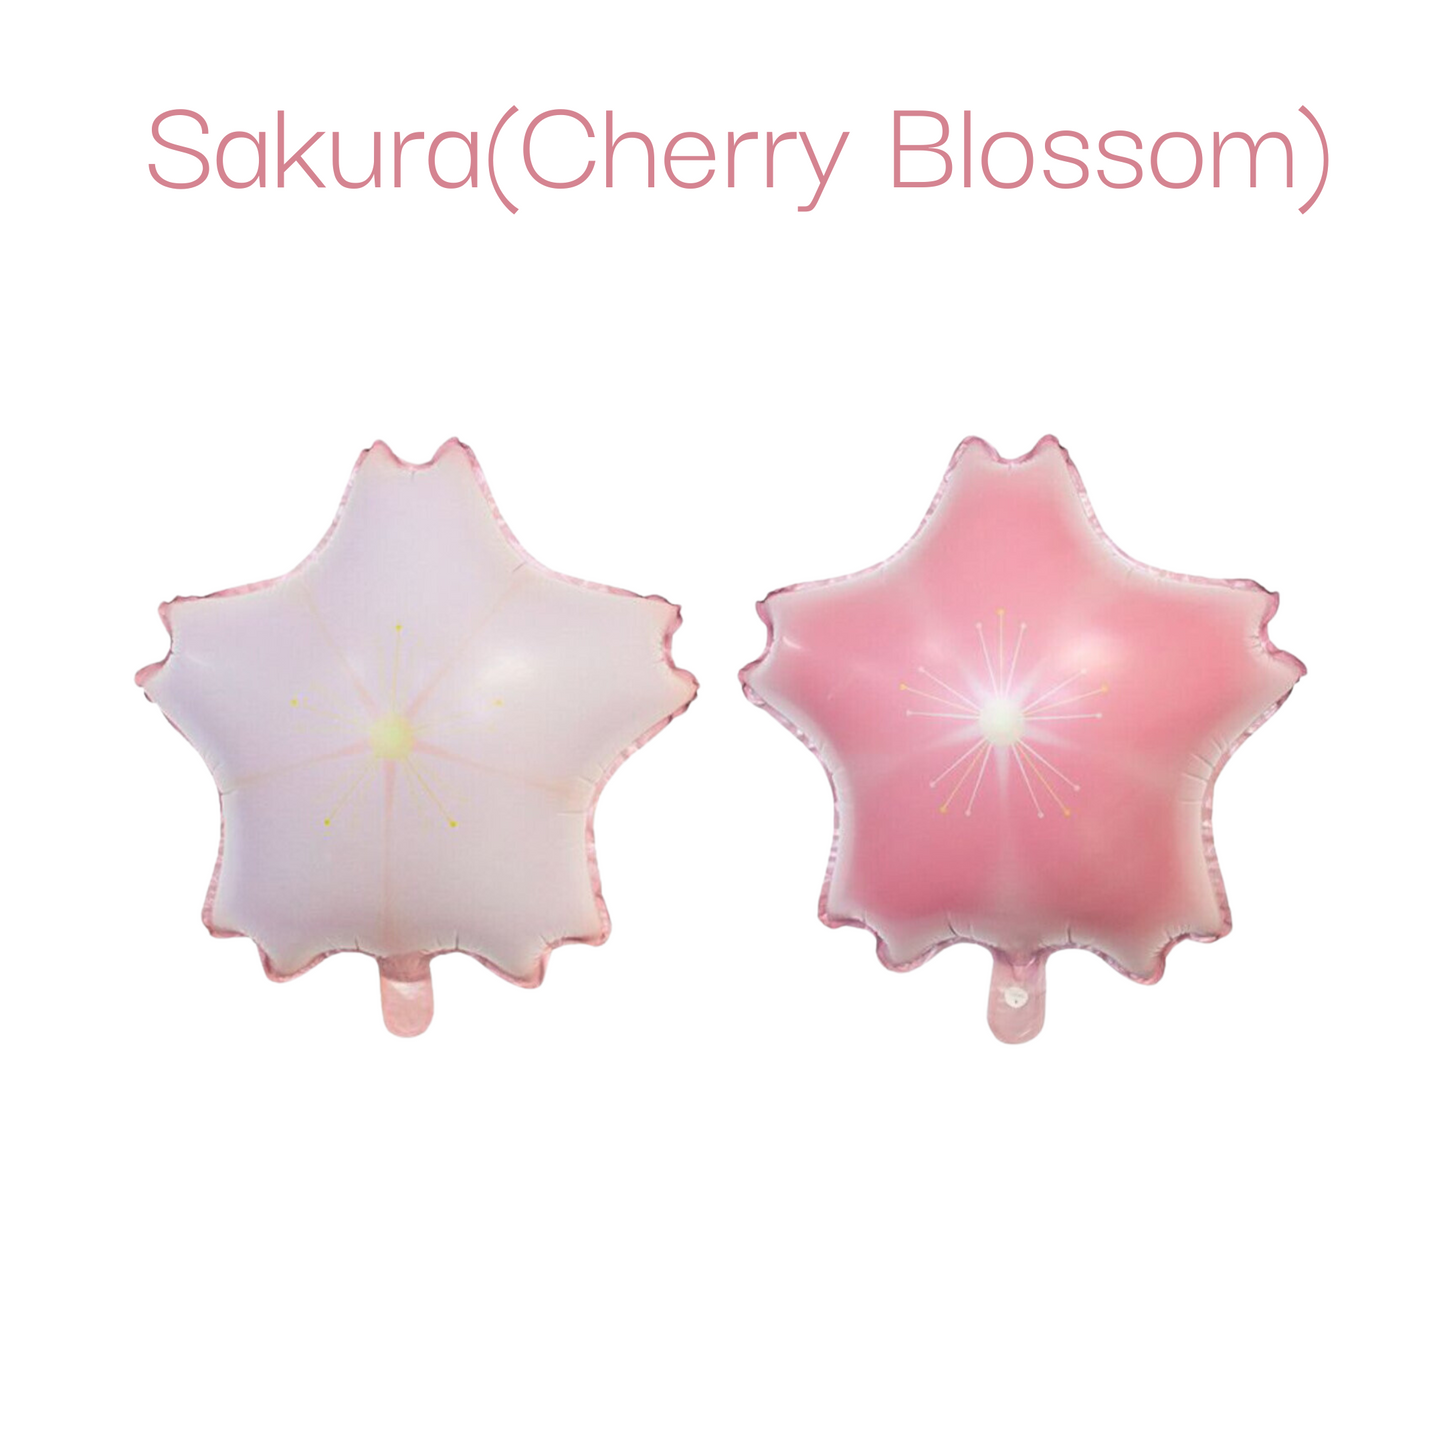 Sakura Balloon Cherry Blossom Foil Balloon